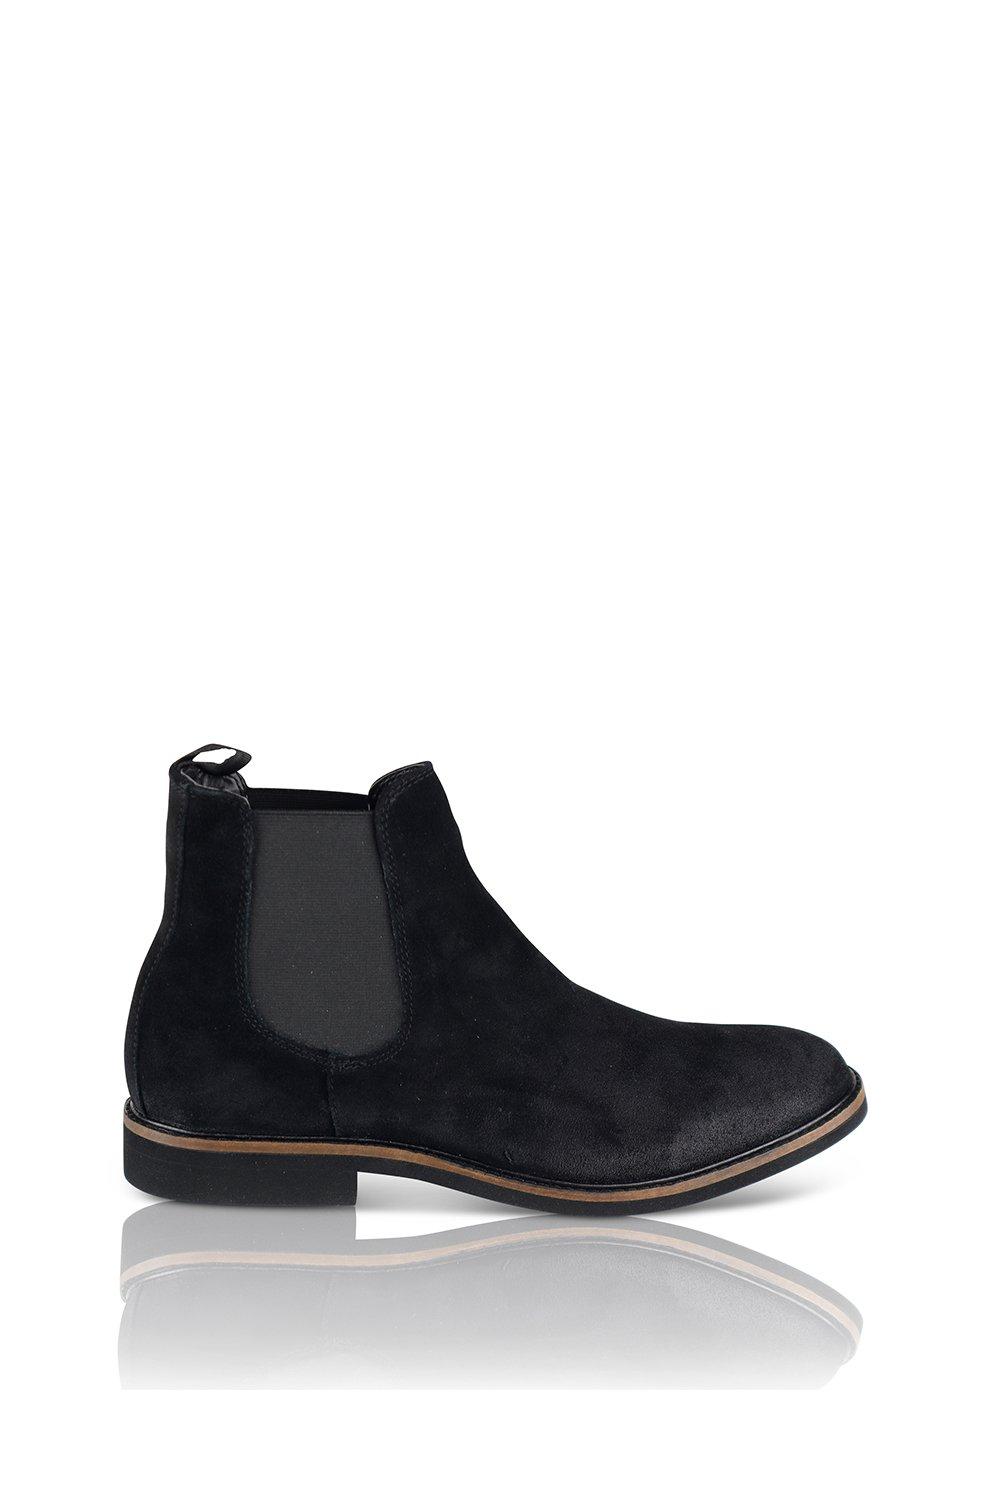 Замшевые ботинки челси San Diego Silver Street London, черный замшевые ботинки челси santoni